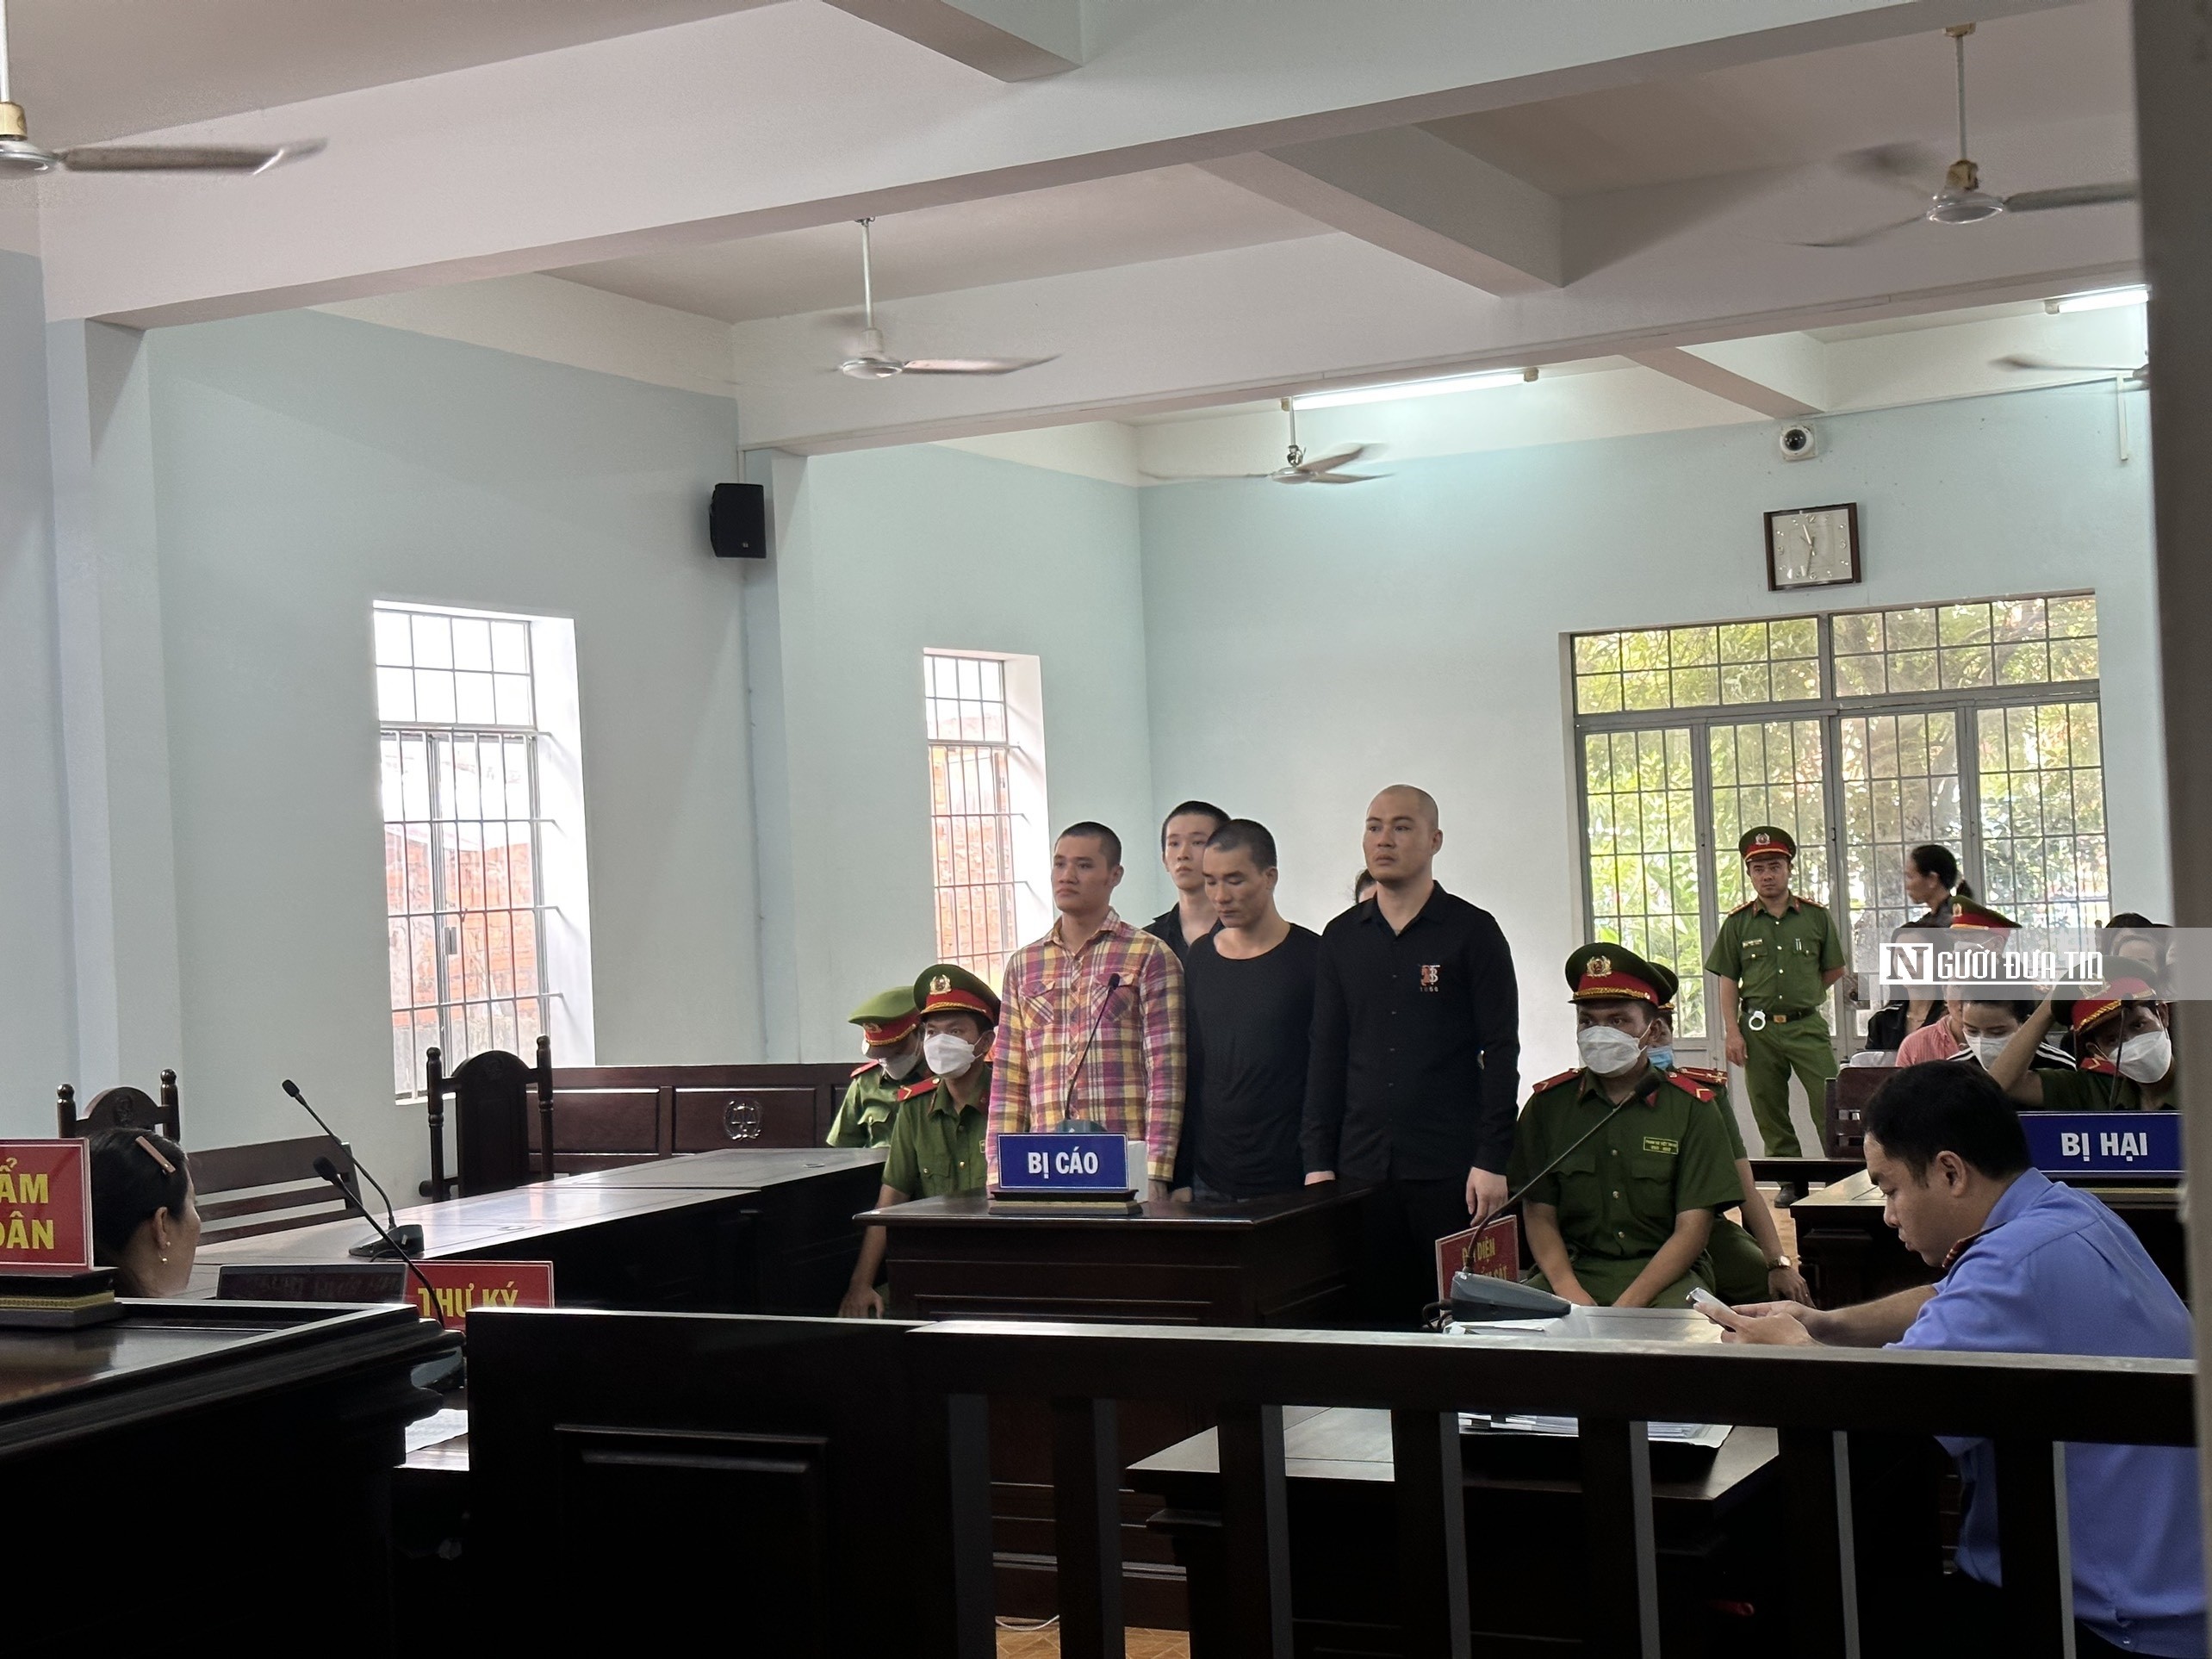 Hồ sơ điều tra - Bình Thuận: Nhóm nam nữ tổ chức bay lắc với ma túy, lãnh án tù